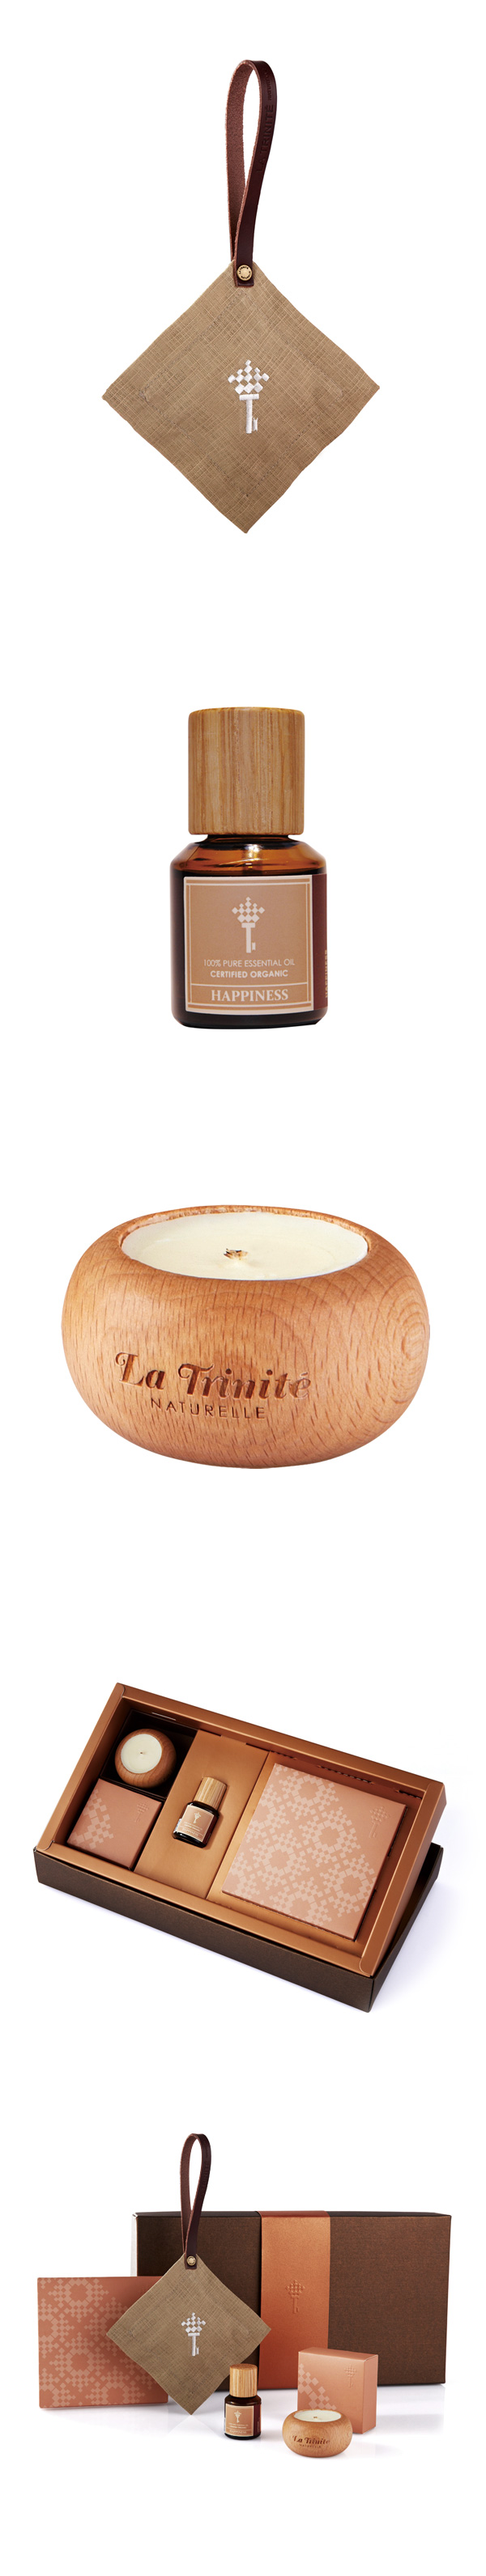 La Trinite 璀莉緹 居家香氛禮盒 (複方純精油+蠟燭+香氛包) (附提袋)